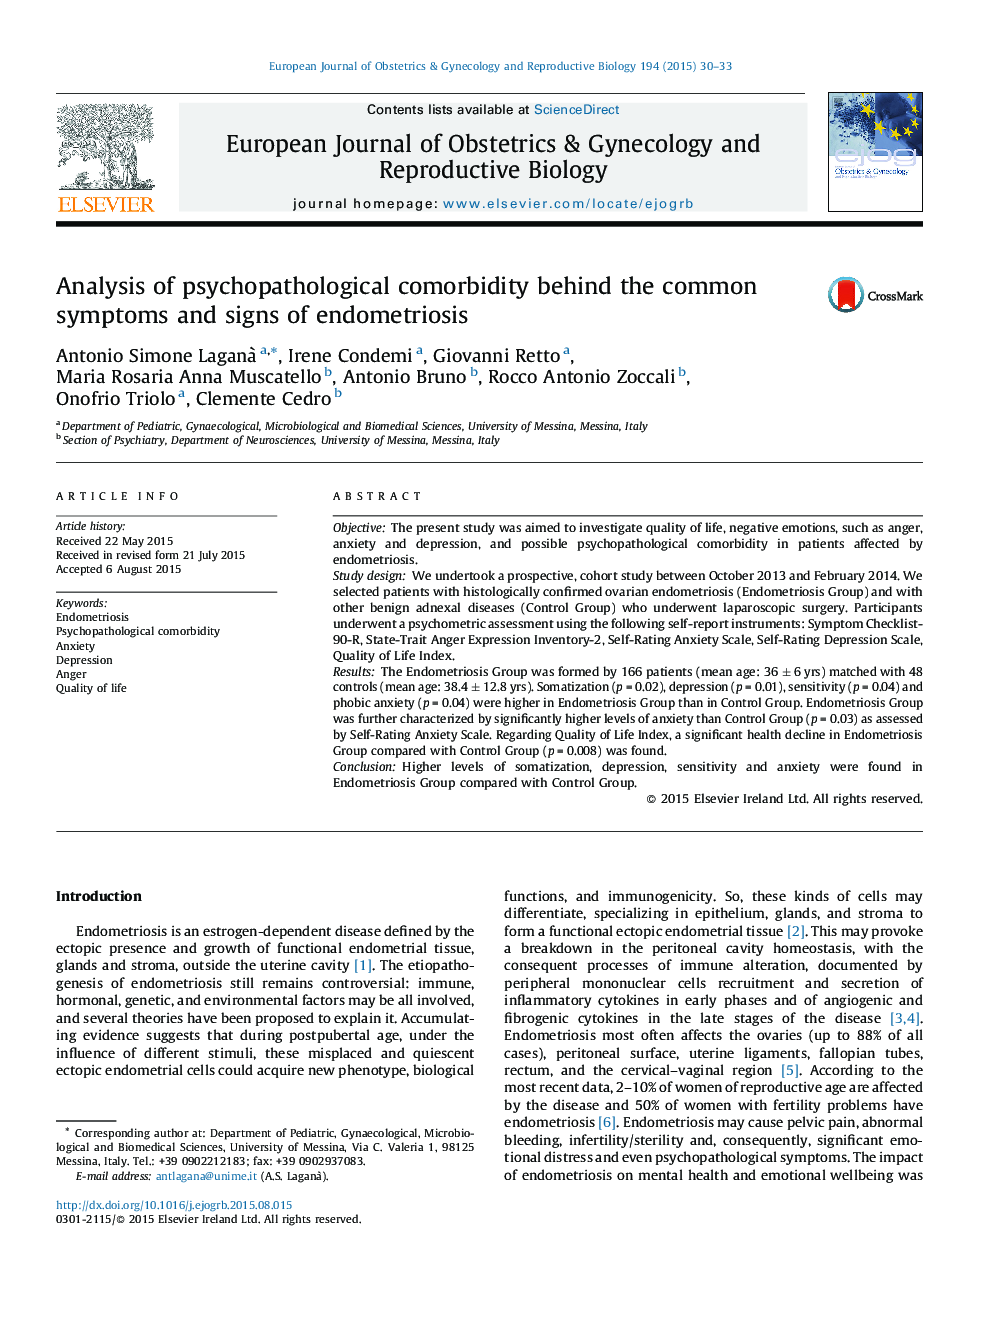 تجزیه و تحلیل ترکیبات روانی و پاتولوژیک پشت علائم رایج و علائم آندومتریوز 